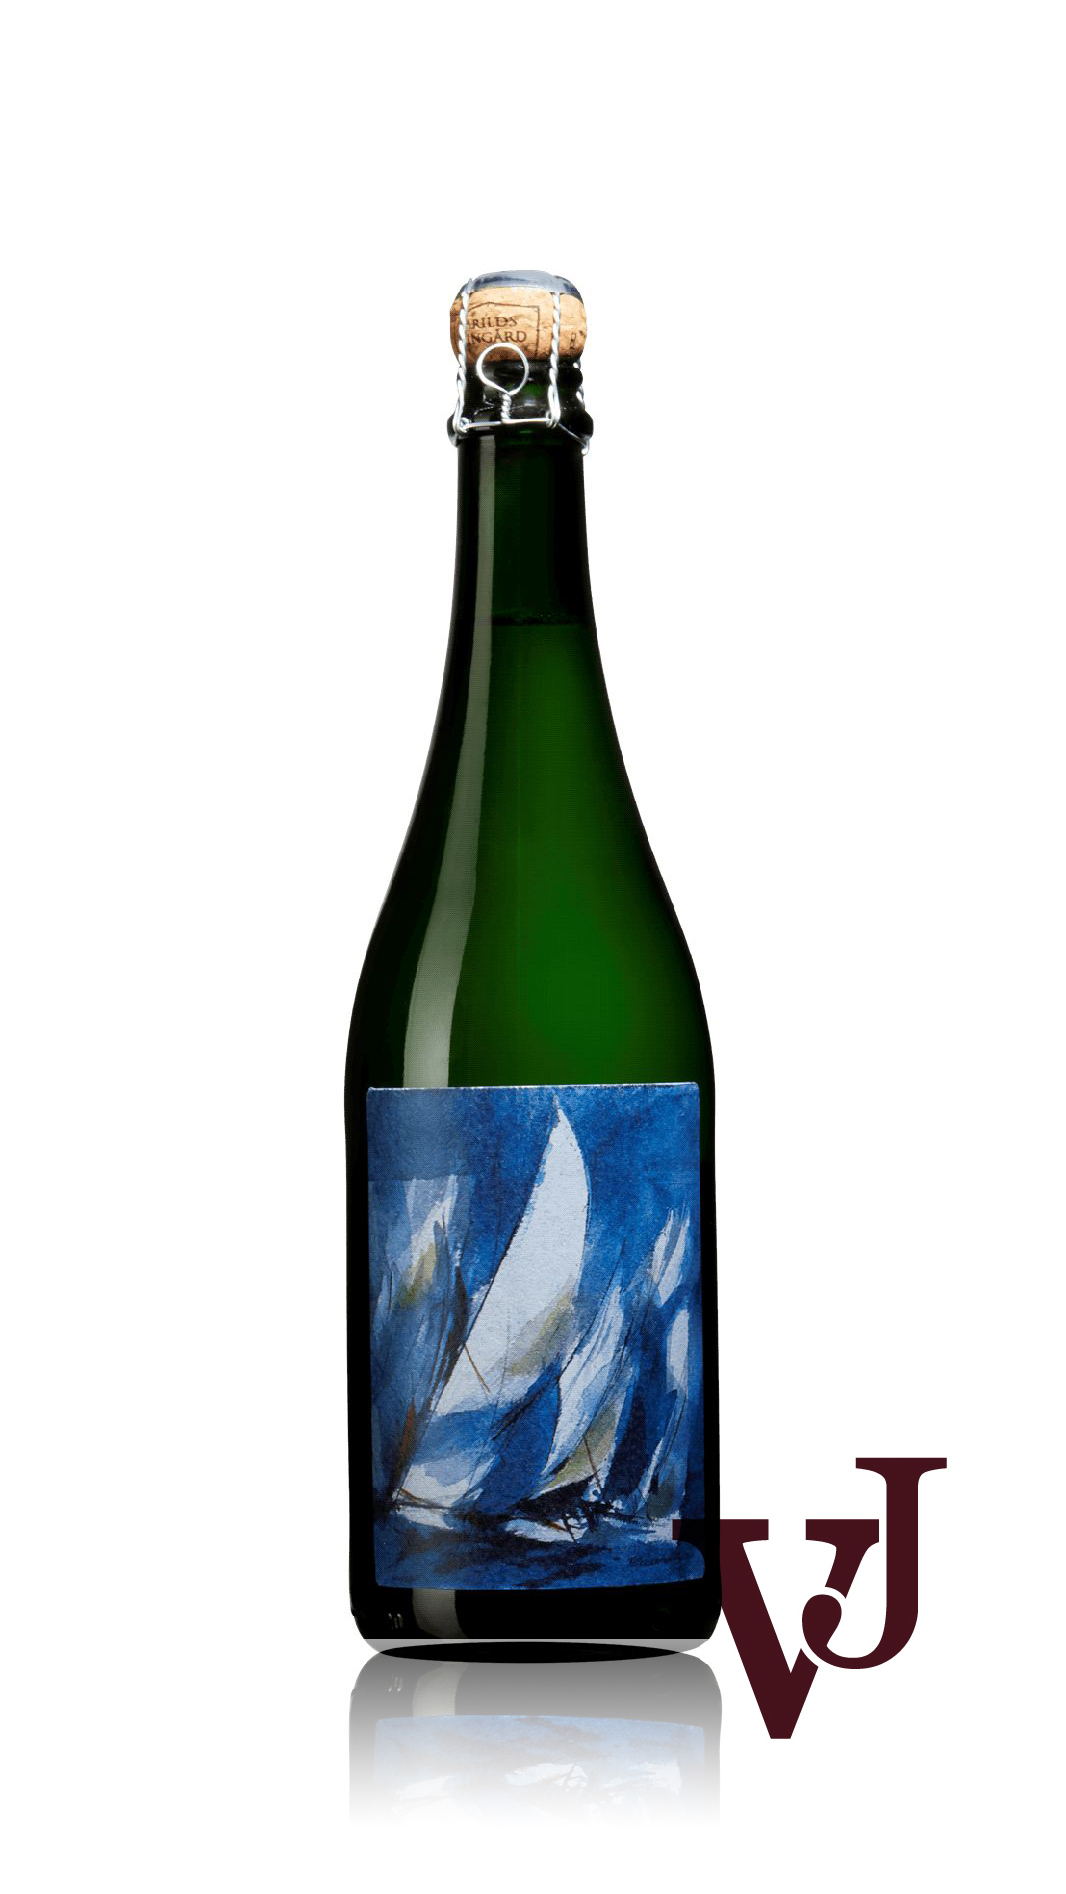 Mousserande Vin - Bubbel SoMu artikel nummer 9467801 från producenten Arilds vingård från området Sverige